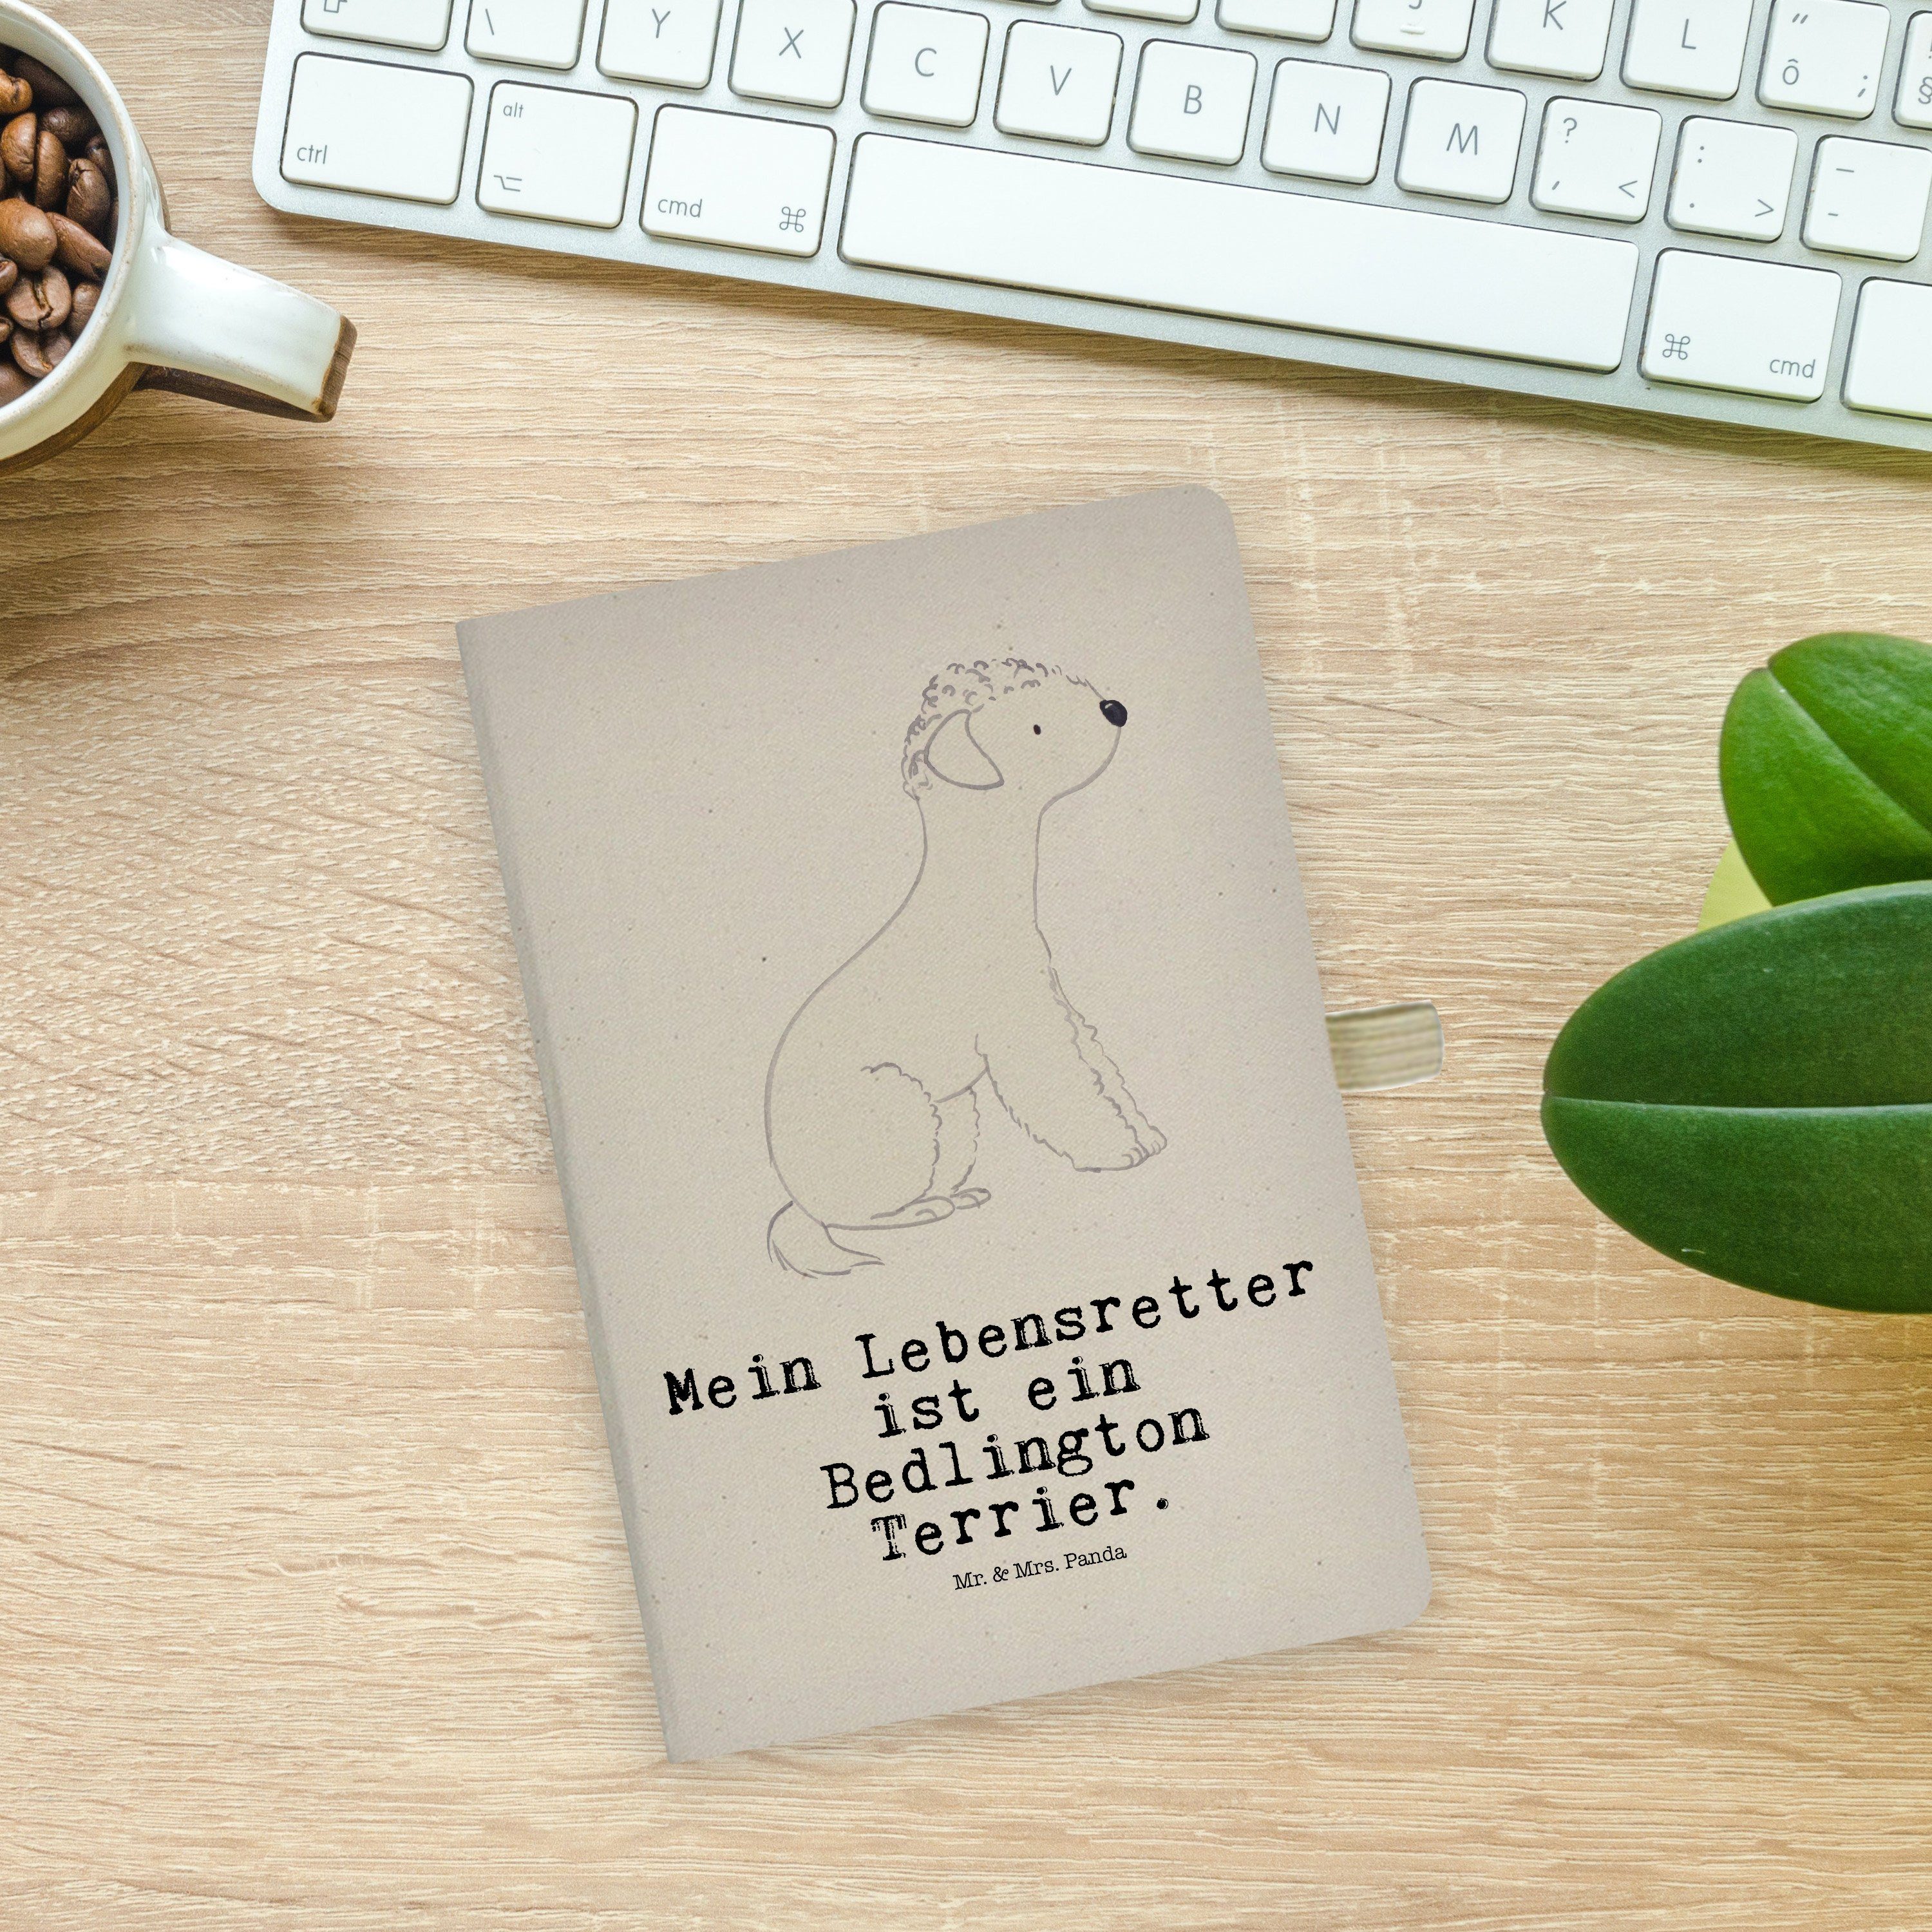 Panda Terrier Mrs. Notizbuch Geschenk, & Mr. Mr. & Panda - - Transparent Schreibheft Mrs. Lebensretter Bedlington